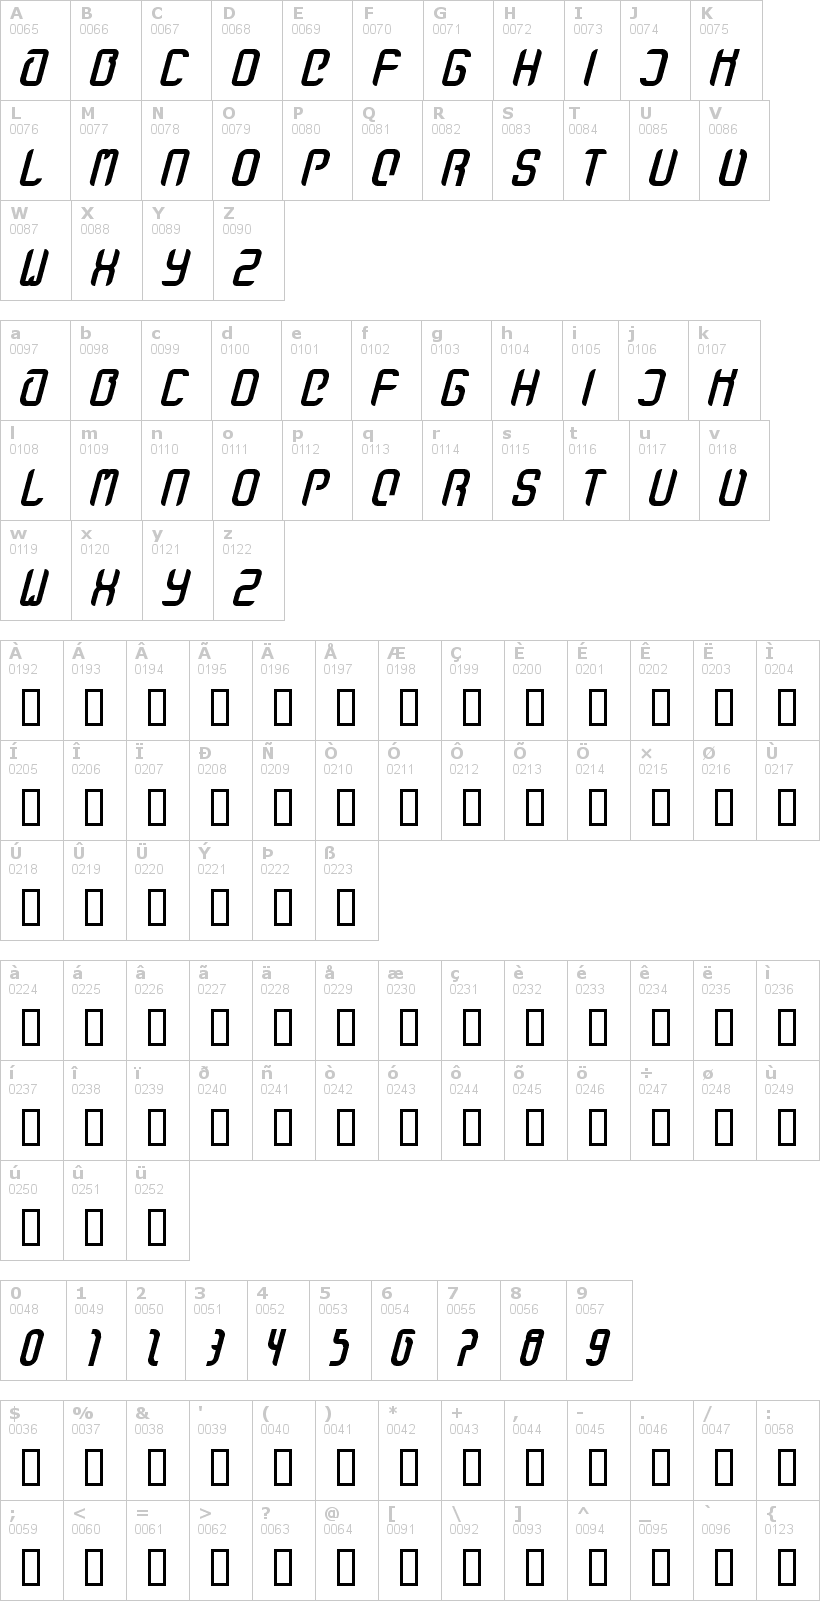 Lettere dell'alfabeto del font stanze-fett con le quali è possibile realizzare adesivi prespaziati